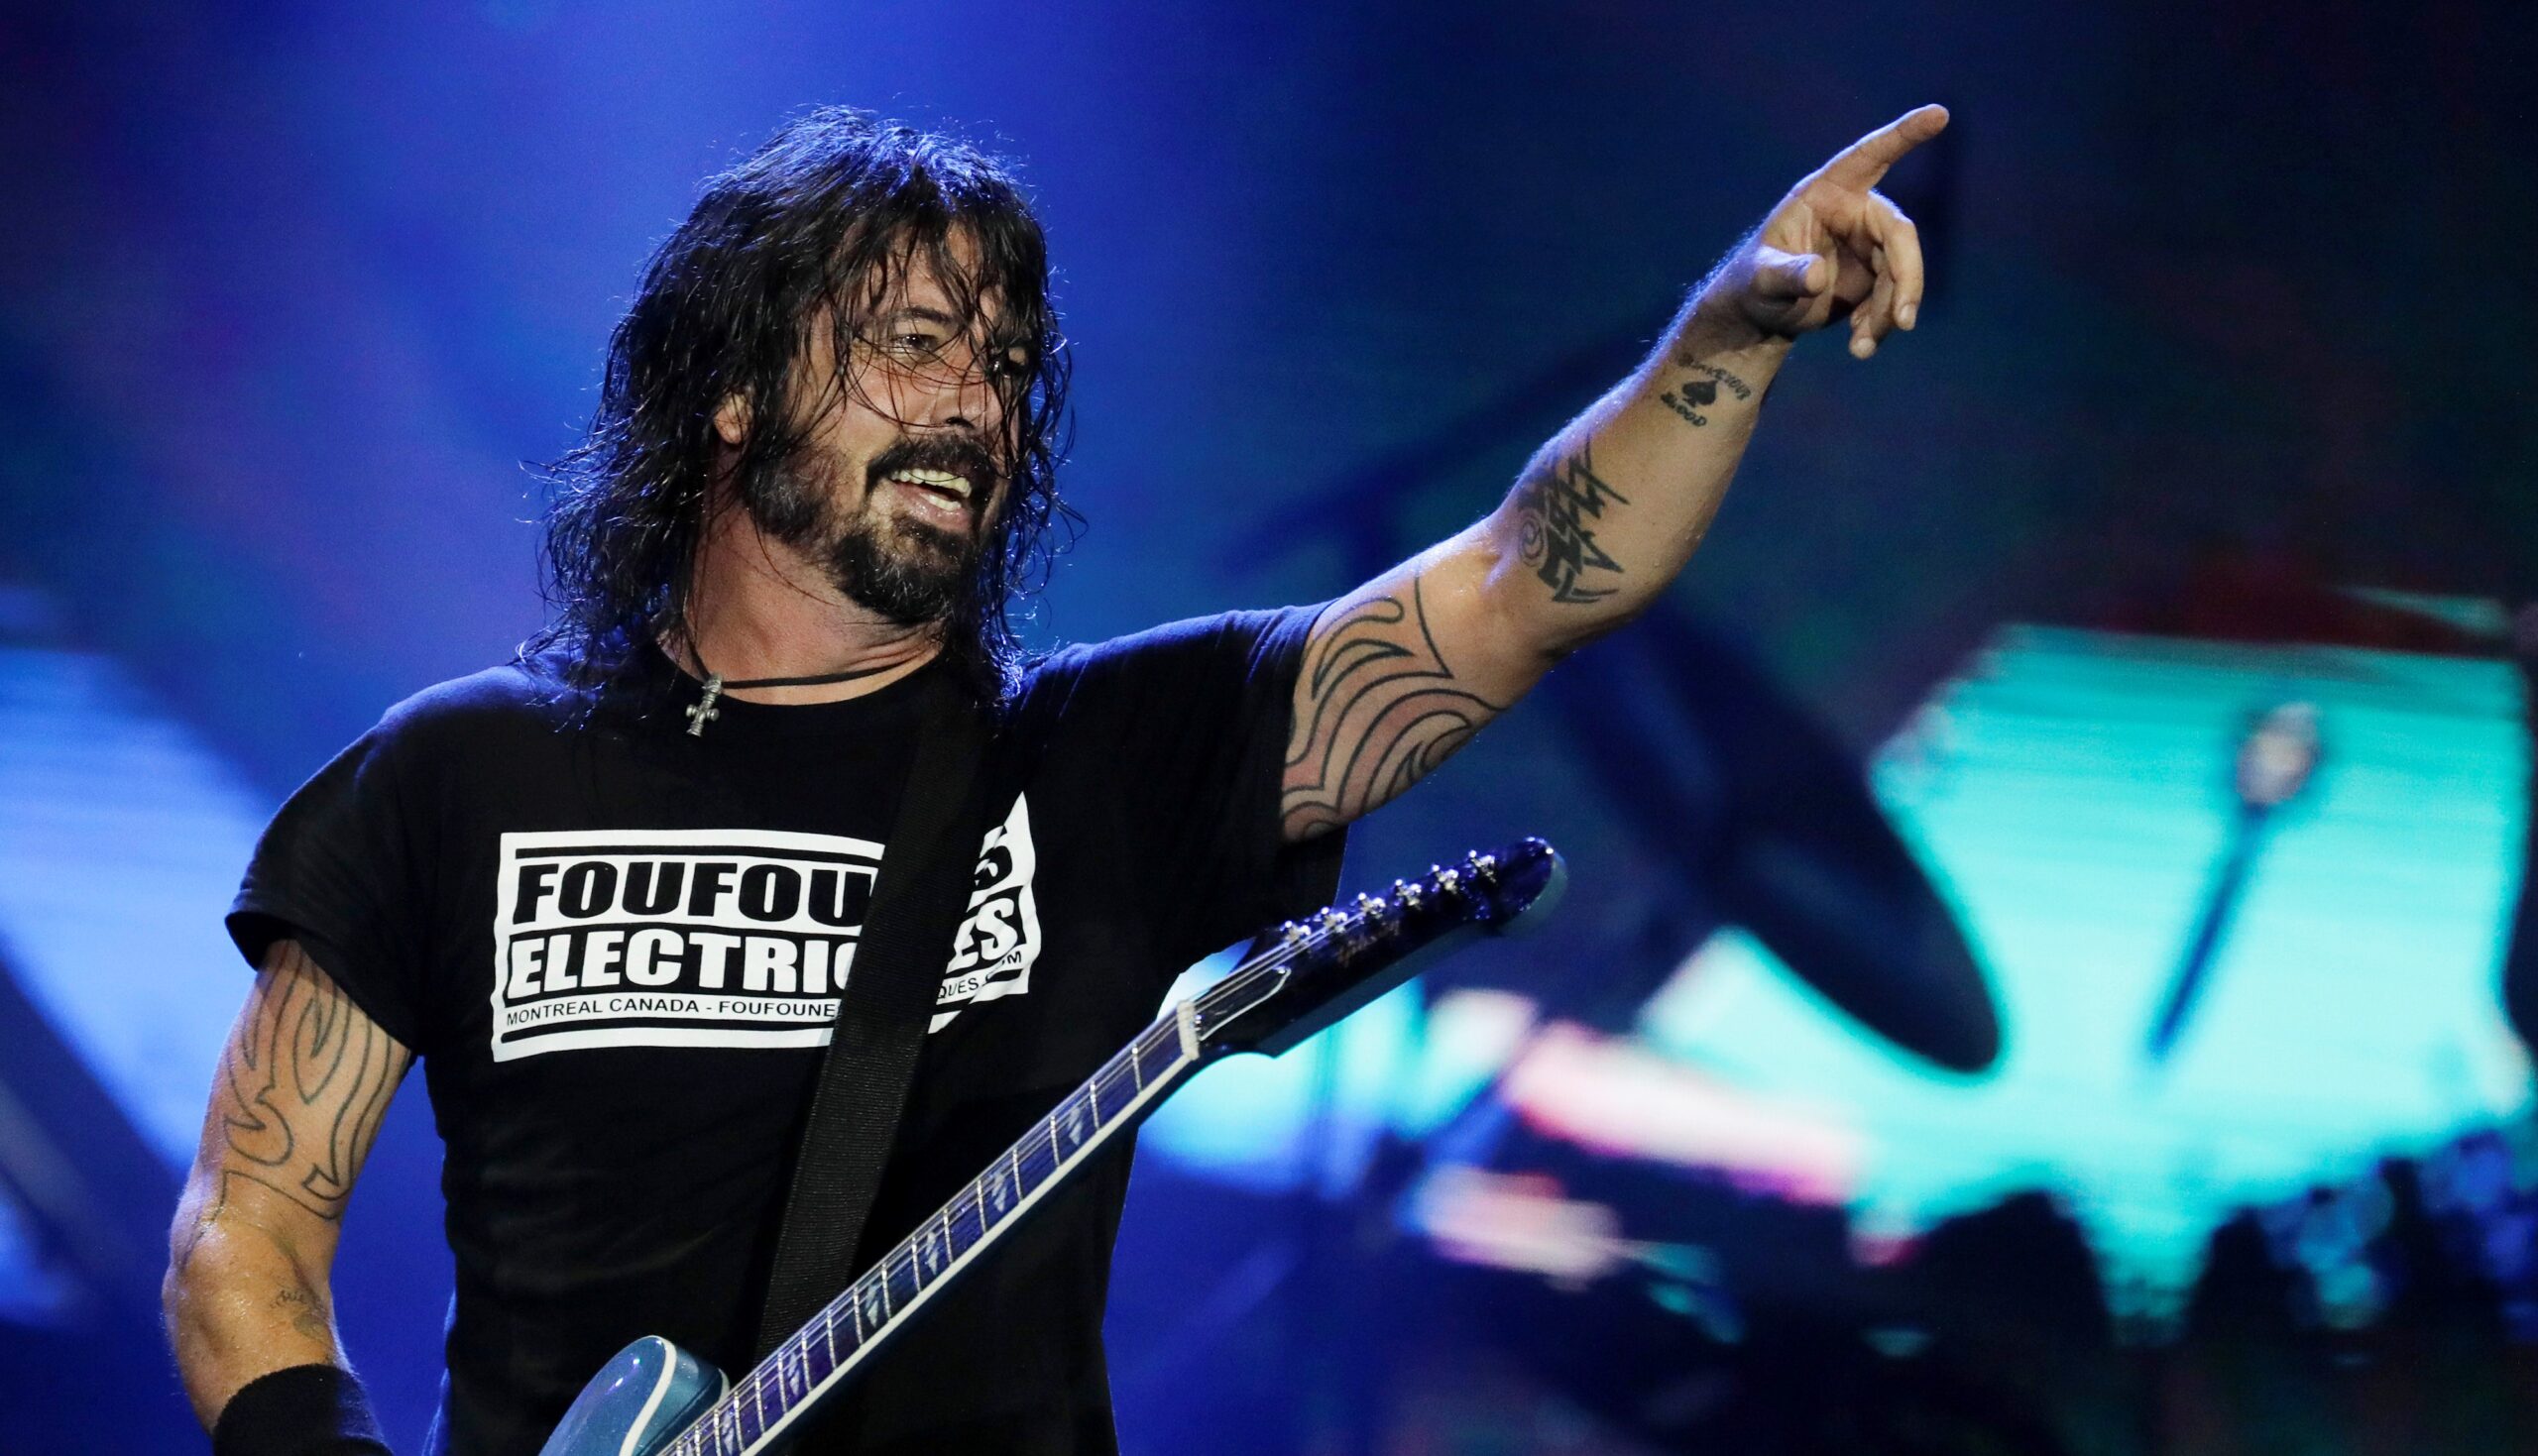 Η επιστροφή των Foo Fighters με ολοκαίνουργιο άλμπουμ – Ακούστε το πρώτο single “Rescued”